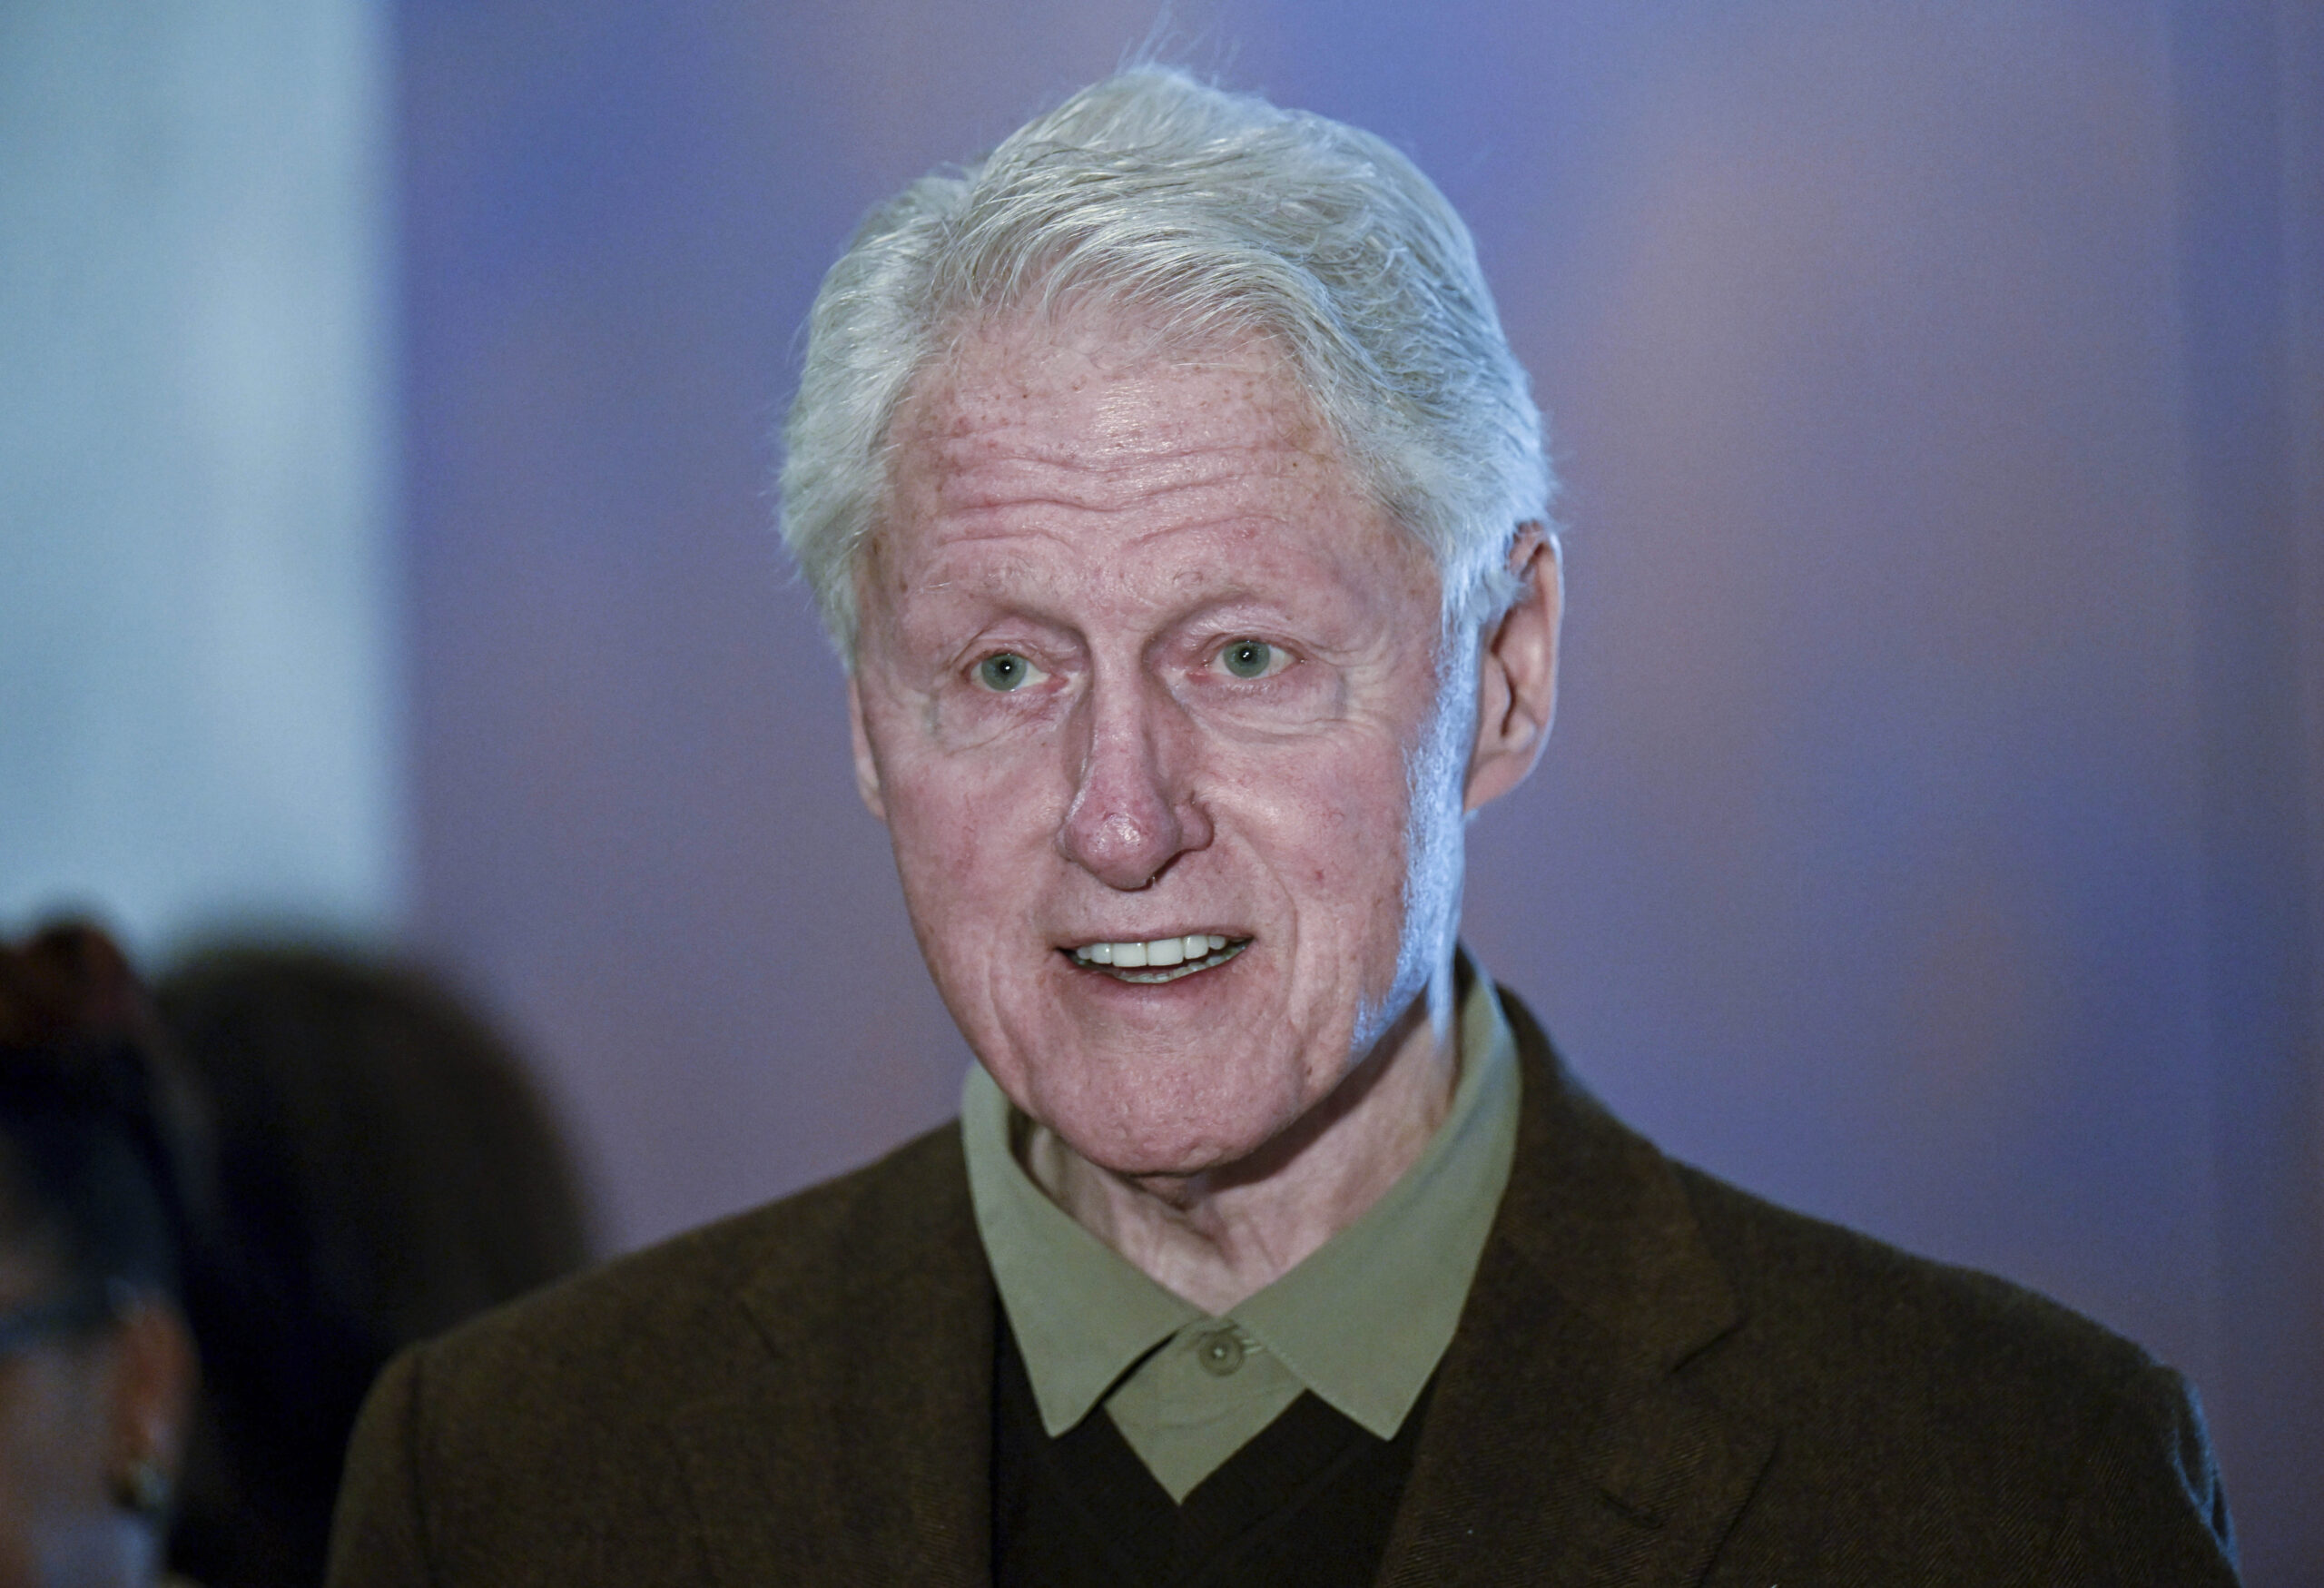 Ο Μπιλ Κλίντον εισέβαλε σε περιοδικό και απείλησε να μην δημοσιεύουν άρθρα κατά του «καλού του φίλου» Επστάιν